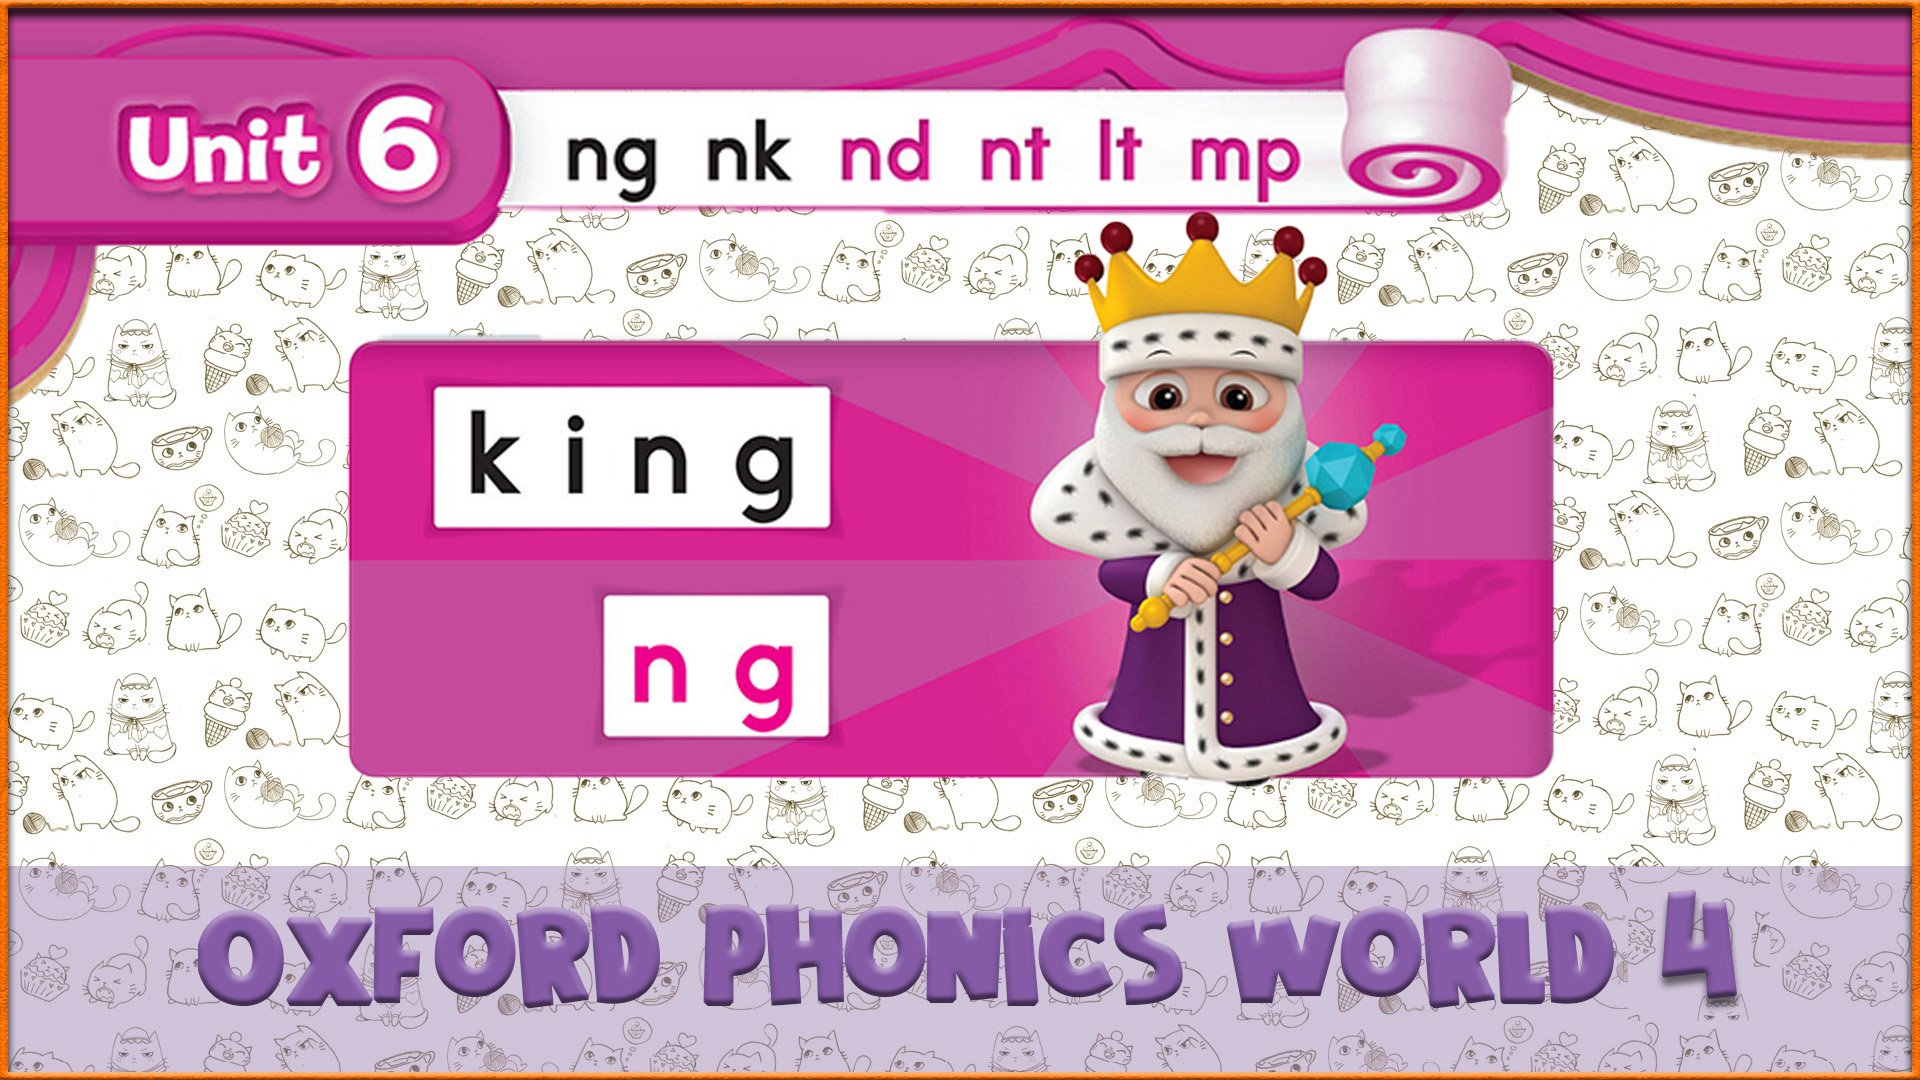 | ng | Oxford Phonics World 4 - Consonant Blends. #34